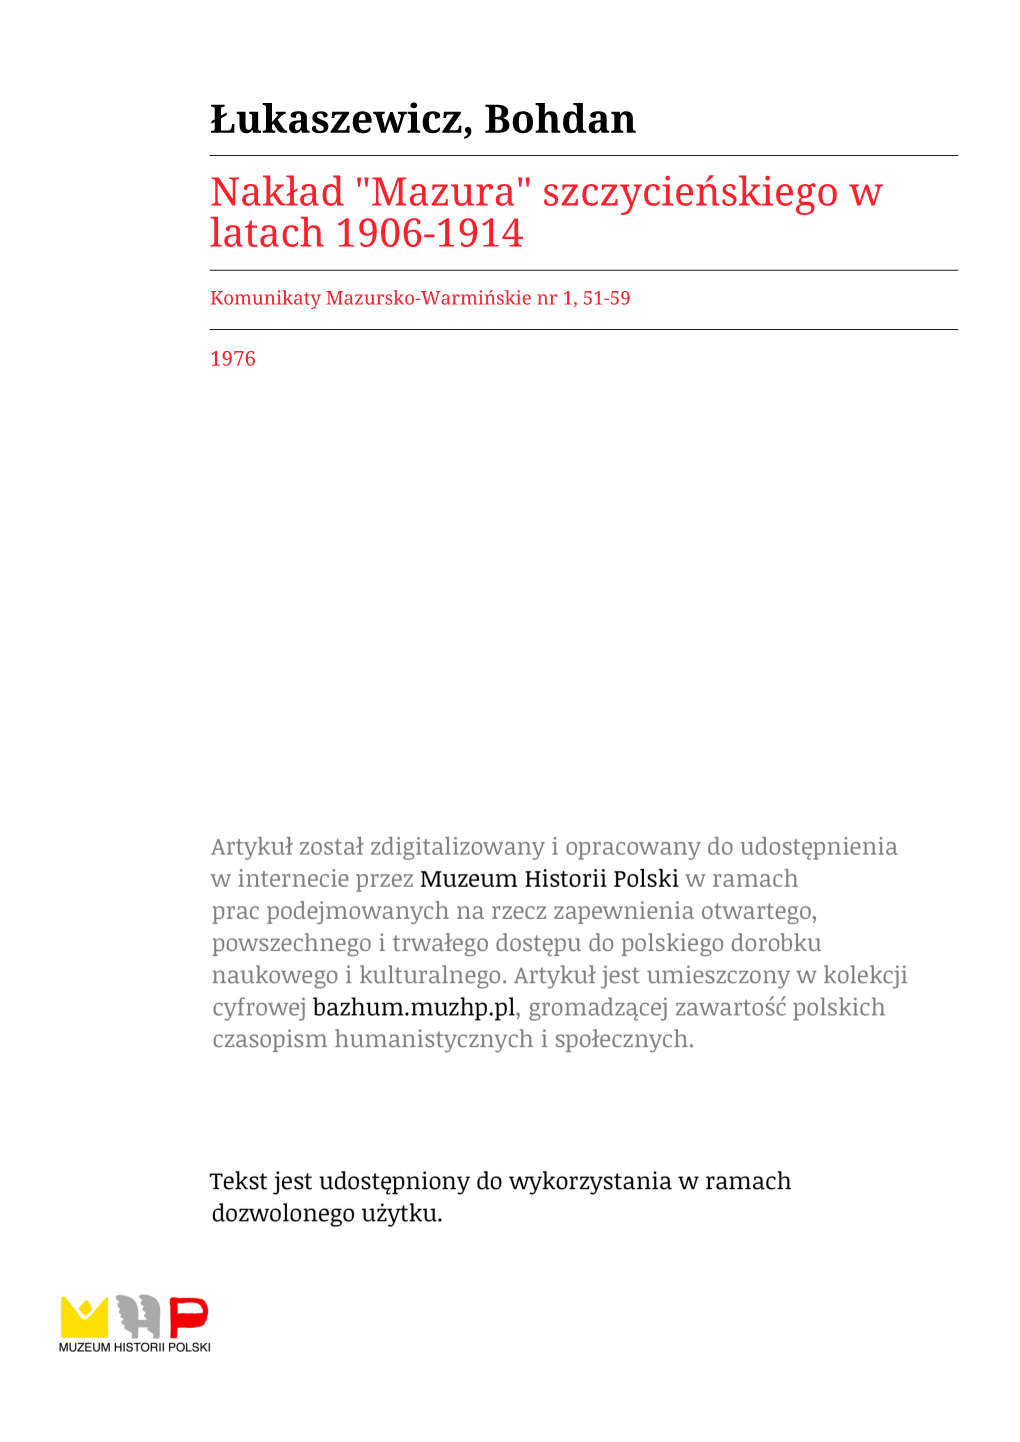 Nakład "Mazura" Szczycieńskiego W Latach 1906-1914